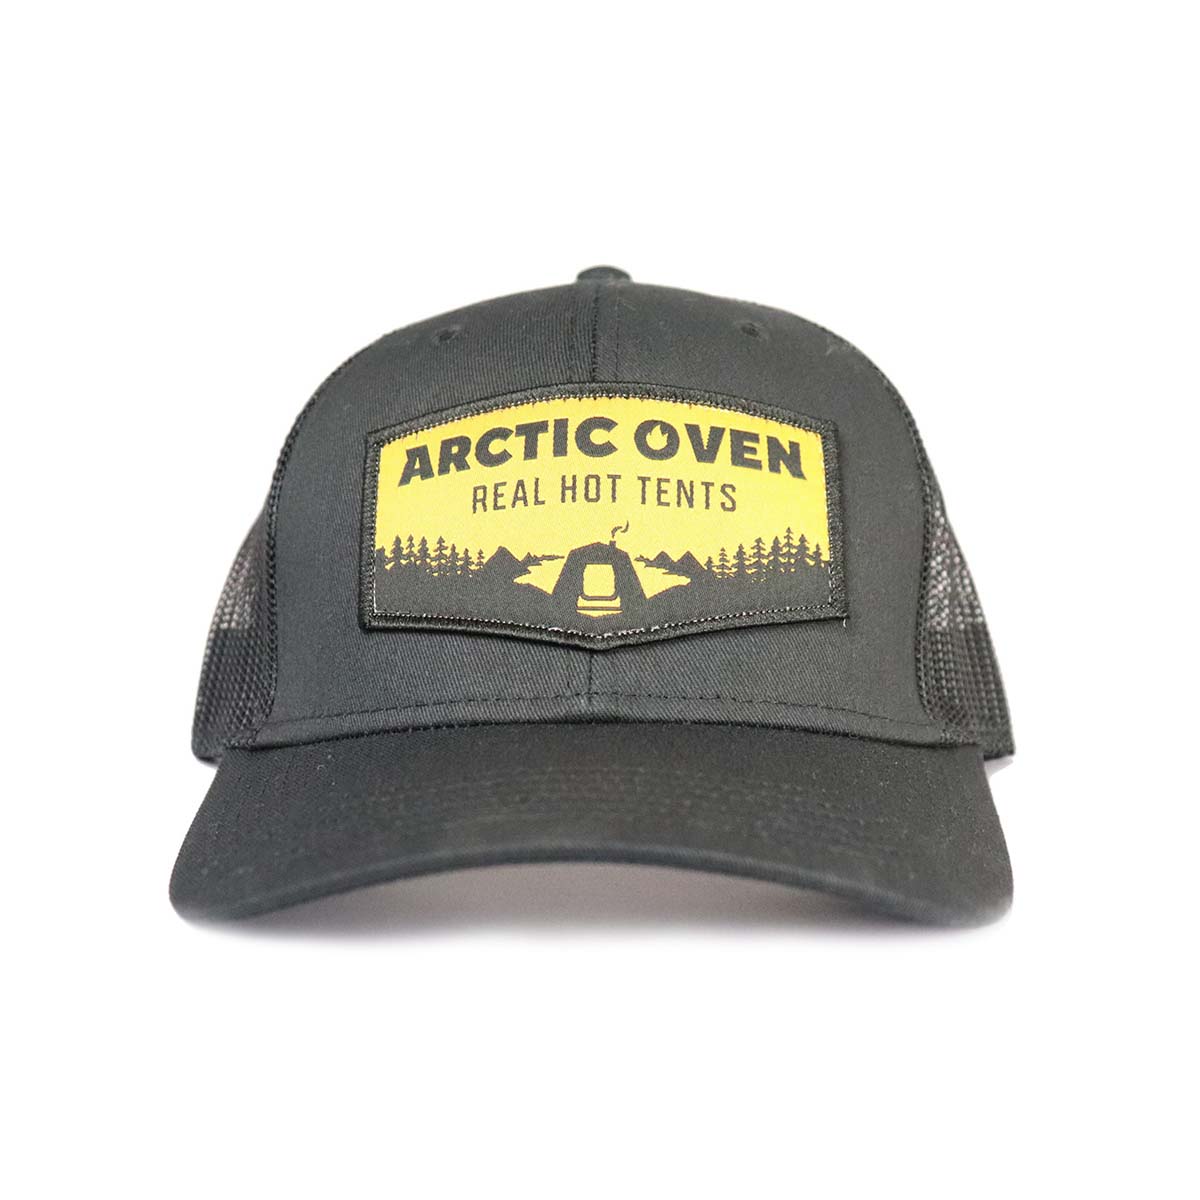 Alaska Gear Company Arctic Oven Real Hot Tents Trucker Hat - HAT HOT TENT